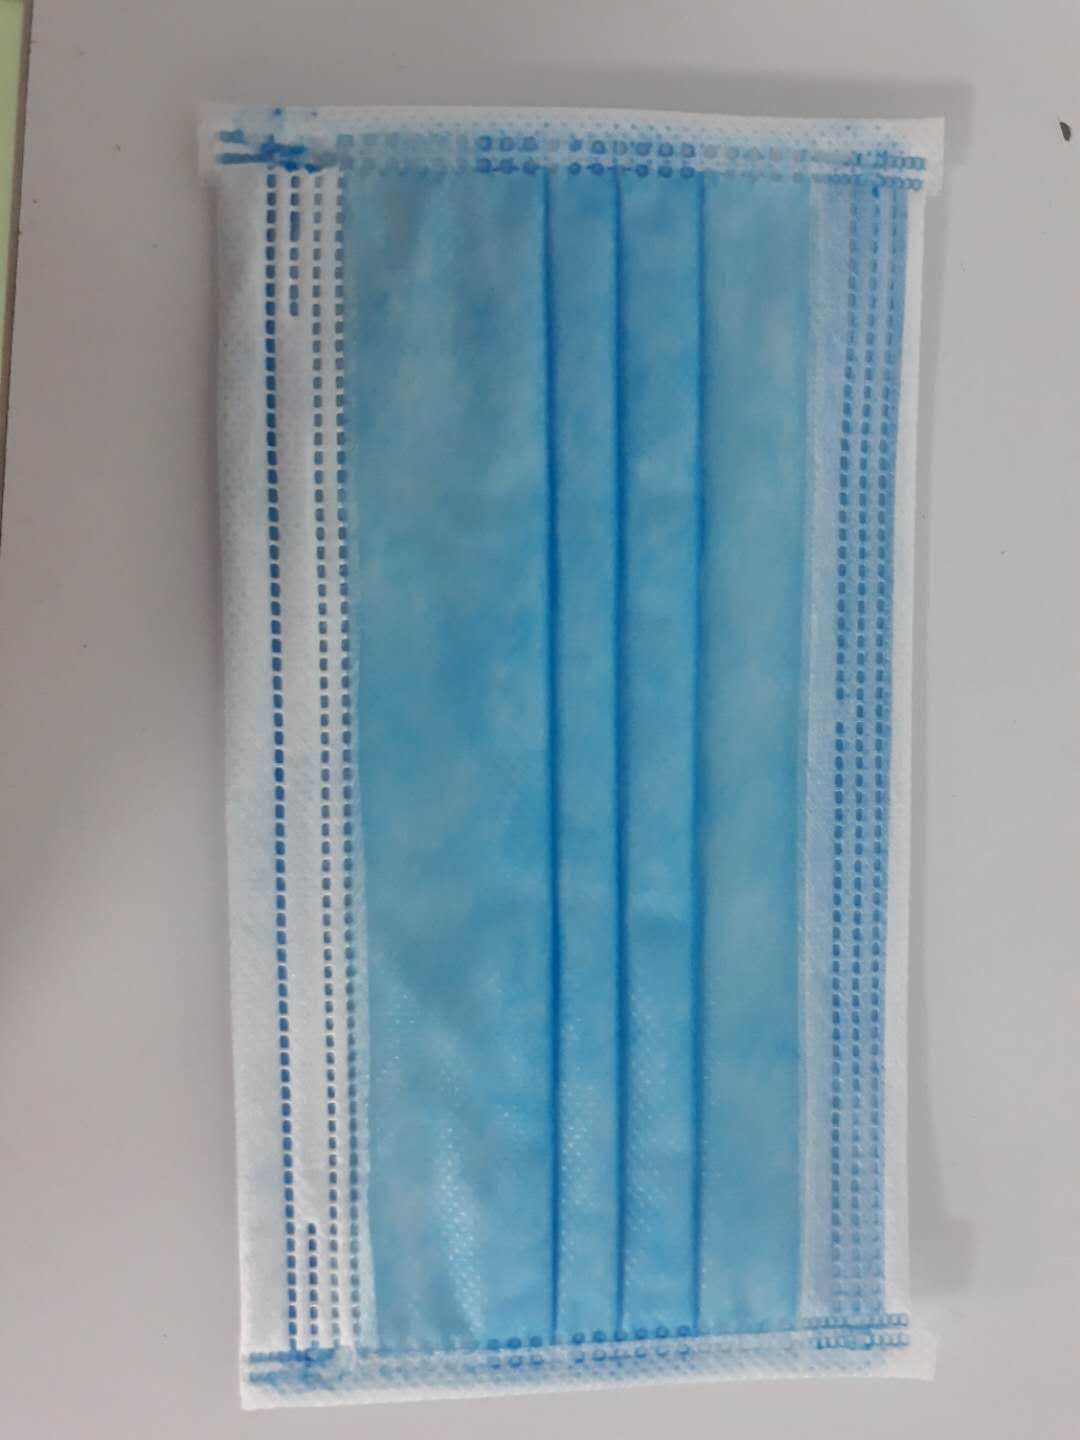 ứng dụng vải không dệt - Vải Không Dệt Tín Viễn - Công Ty TNHH Sản Xuất Tín Viễn Việt Nam